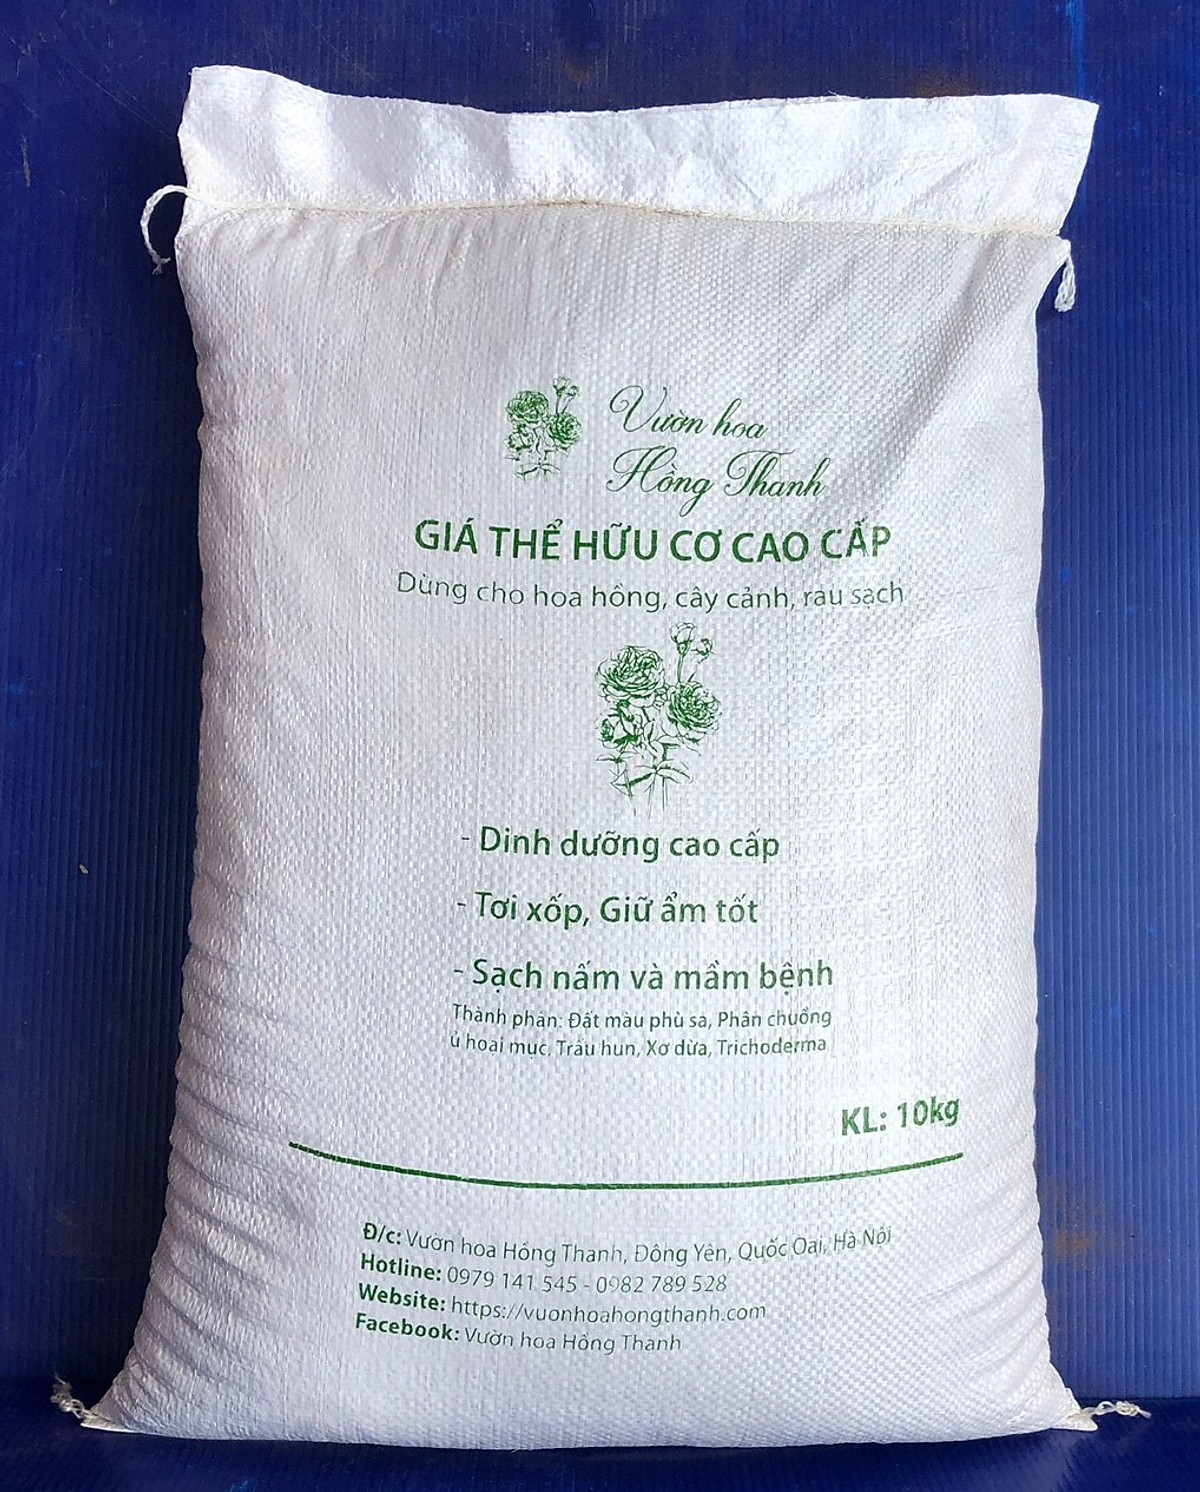 Đất trồng cây cao cấp, Giá thể hữu cơ cao cấp dùng cho Hoa Hồng, Cây Cảnh, rau sạch (Bao 10kg)